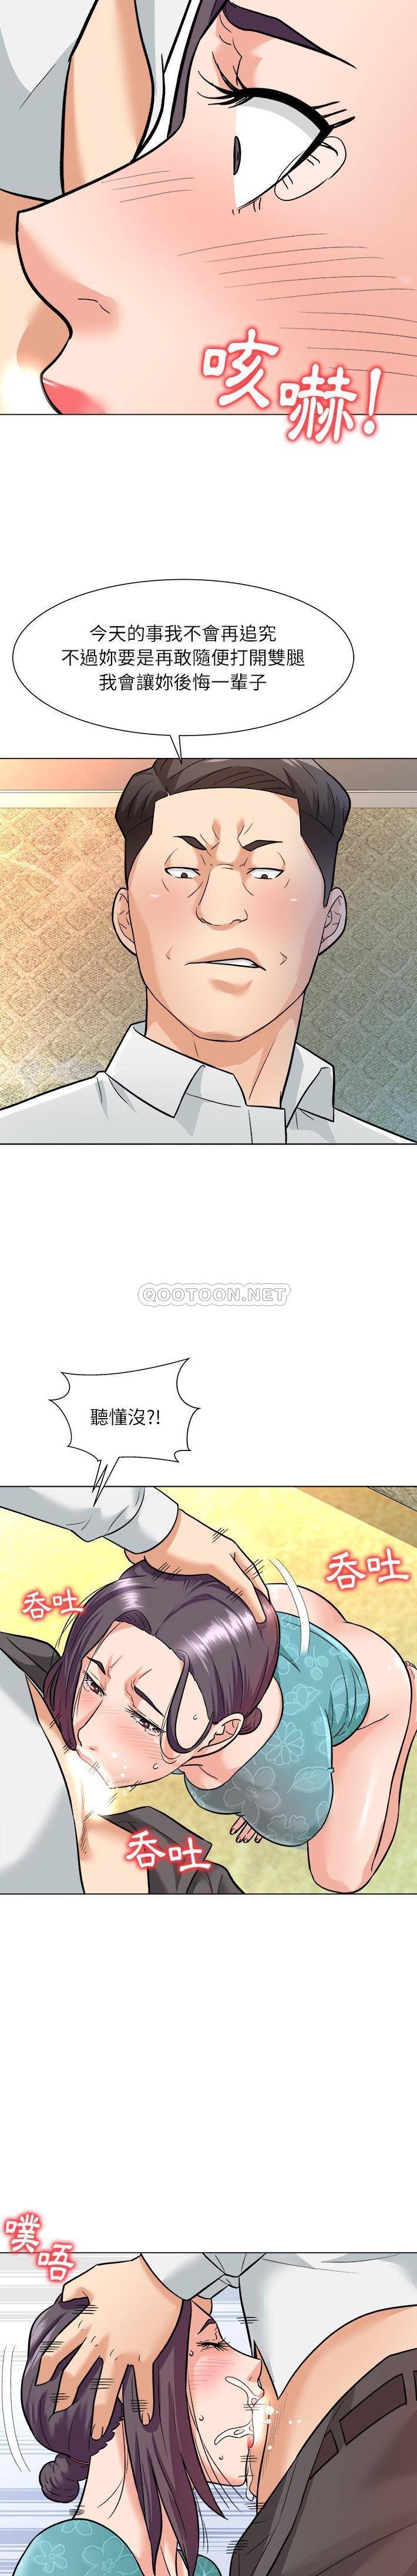 韩国污漫画 豪賭陷阱 第5话 13